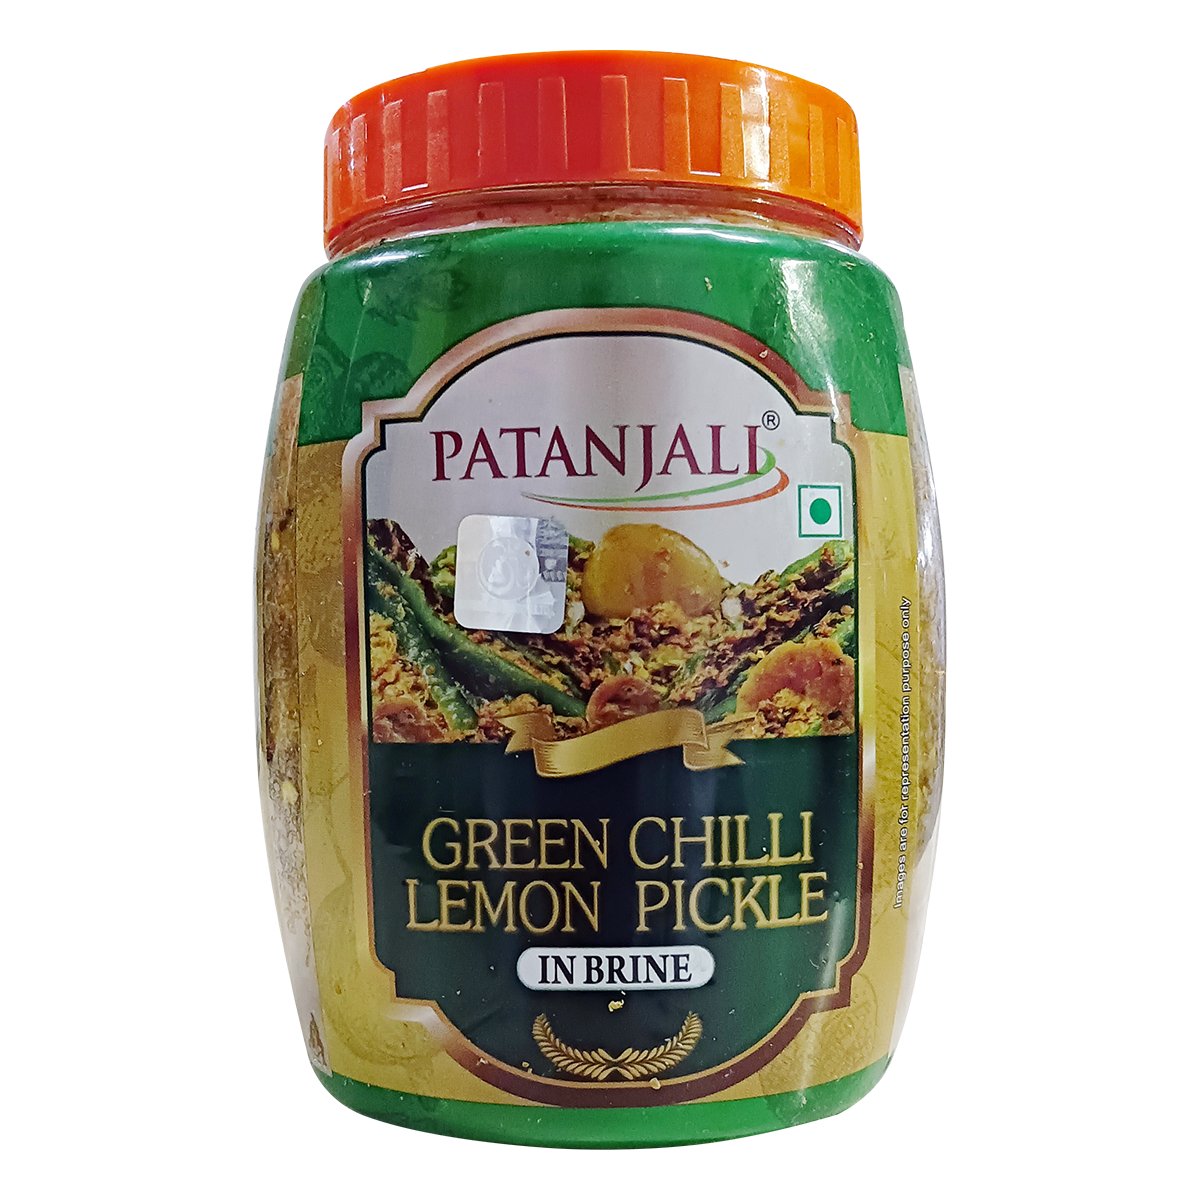 Green Chilli Lemon Pickle